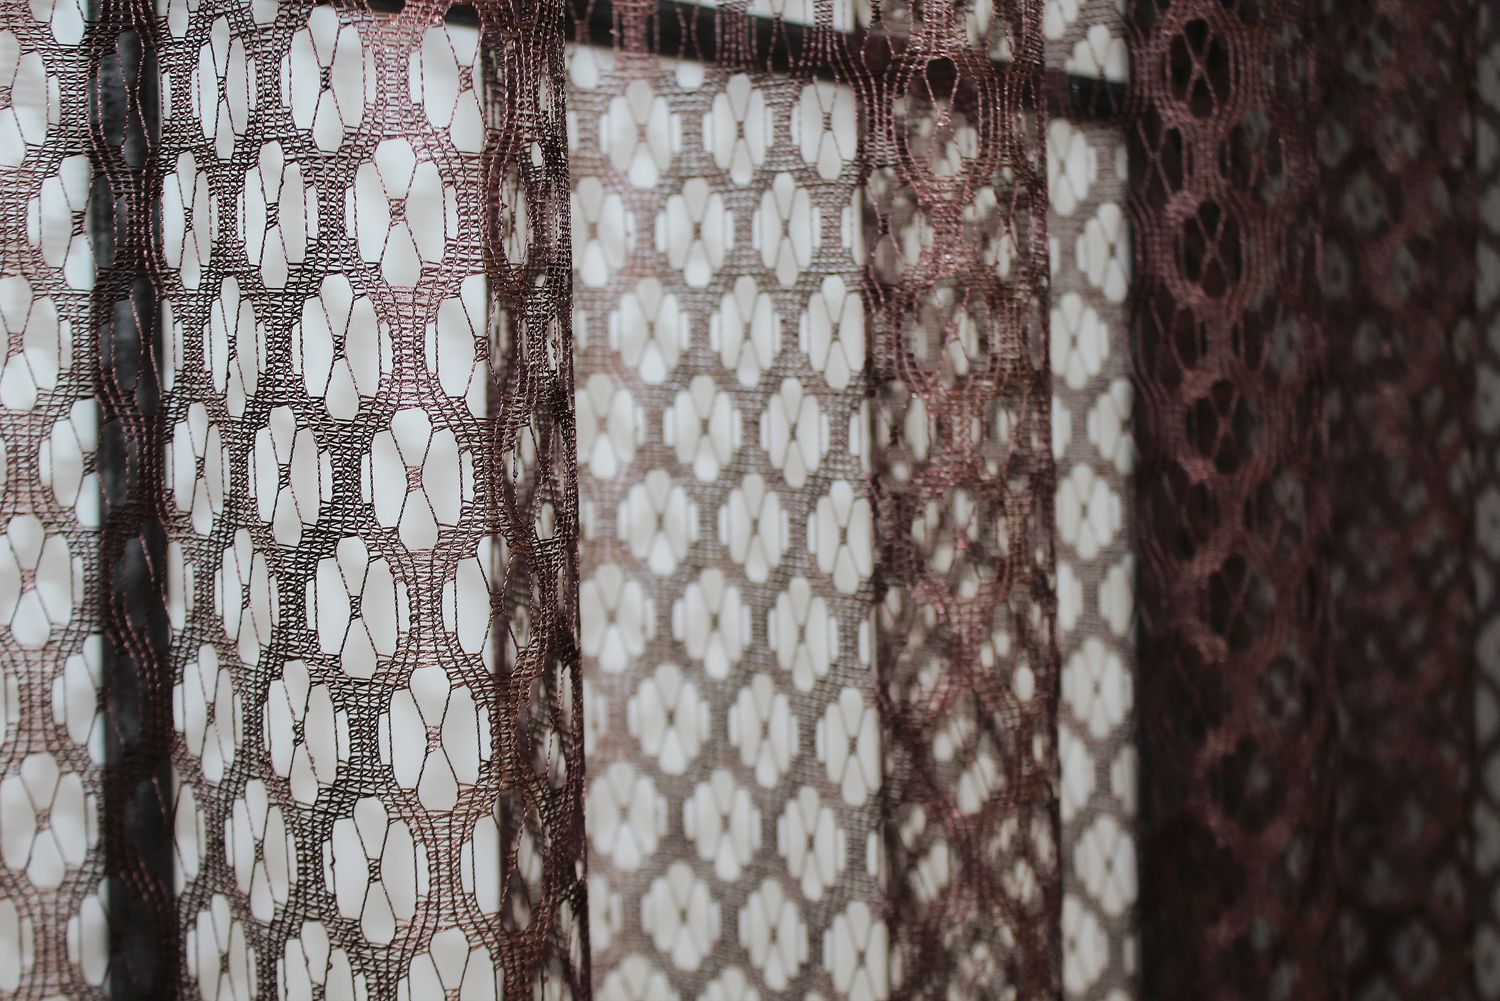 Арка (290х175см) сетка с кружевом, на кухню, балкон цвет коричневый с бежевым 000к 51-157